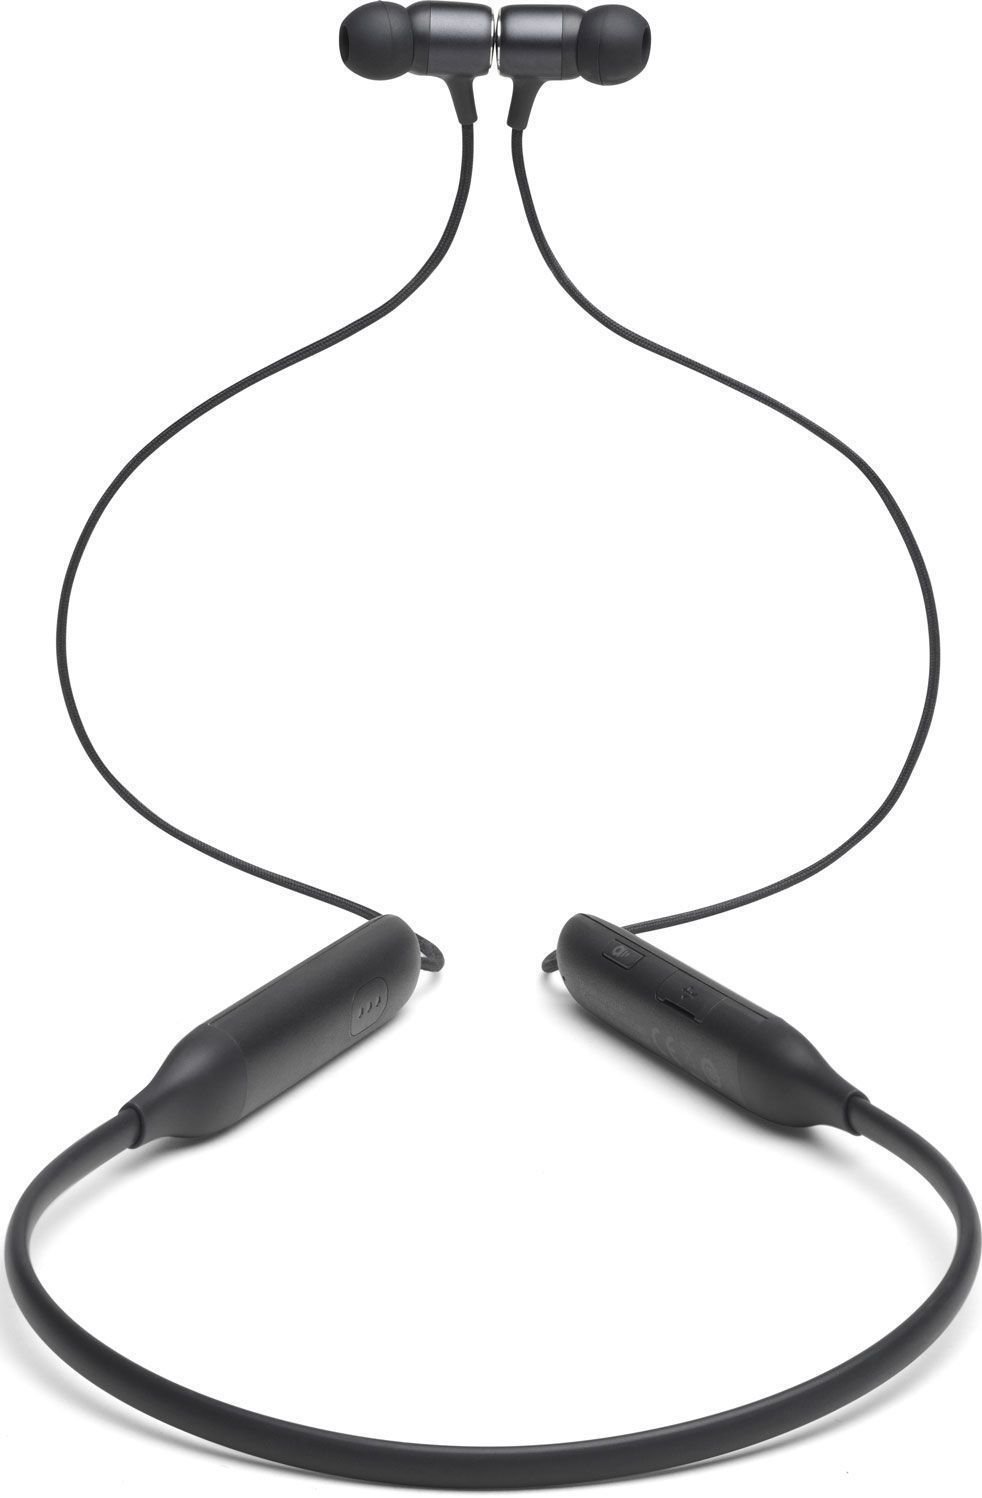 Wireless In-ear headphones JBL Live 220BT Black